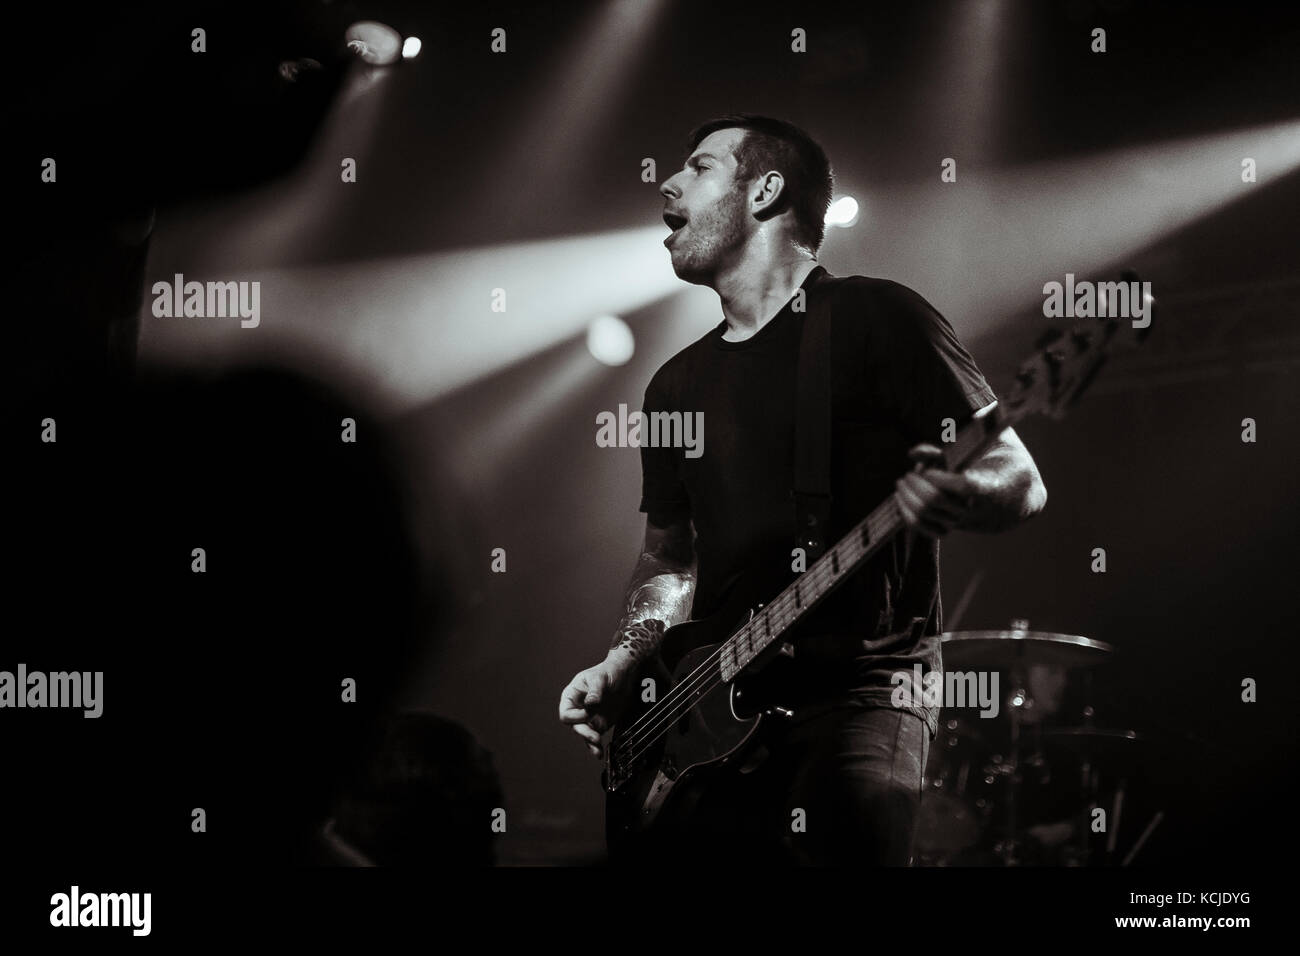 L'americano Christian post-hardcore Underoath esegue un concerto dal vivo a Pumpehuset a Copenhagen. Qui il bassista Grant Brandell è visto dal vivo sul palco. Danimarca, 16/05 2017. Foto Stock